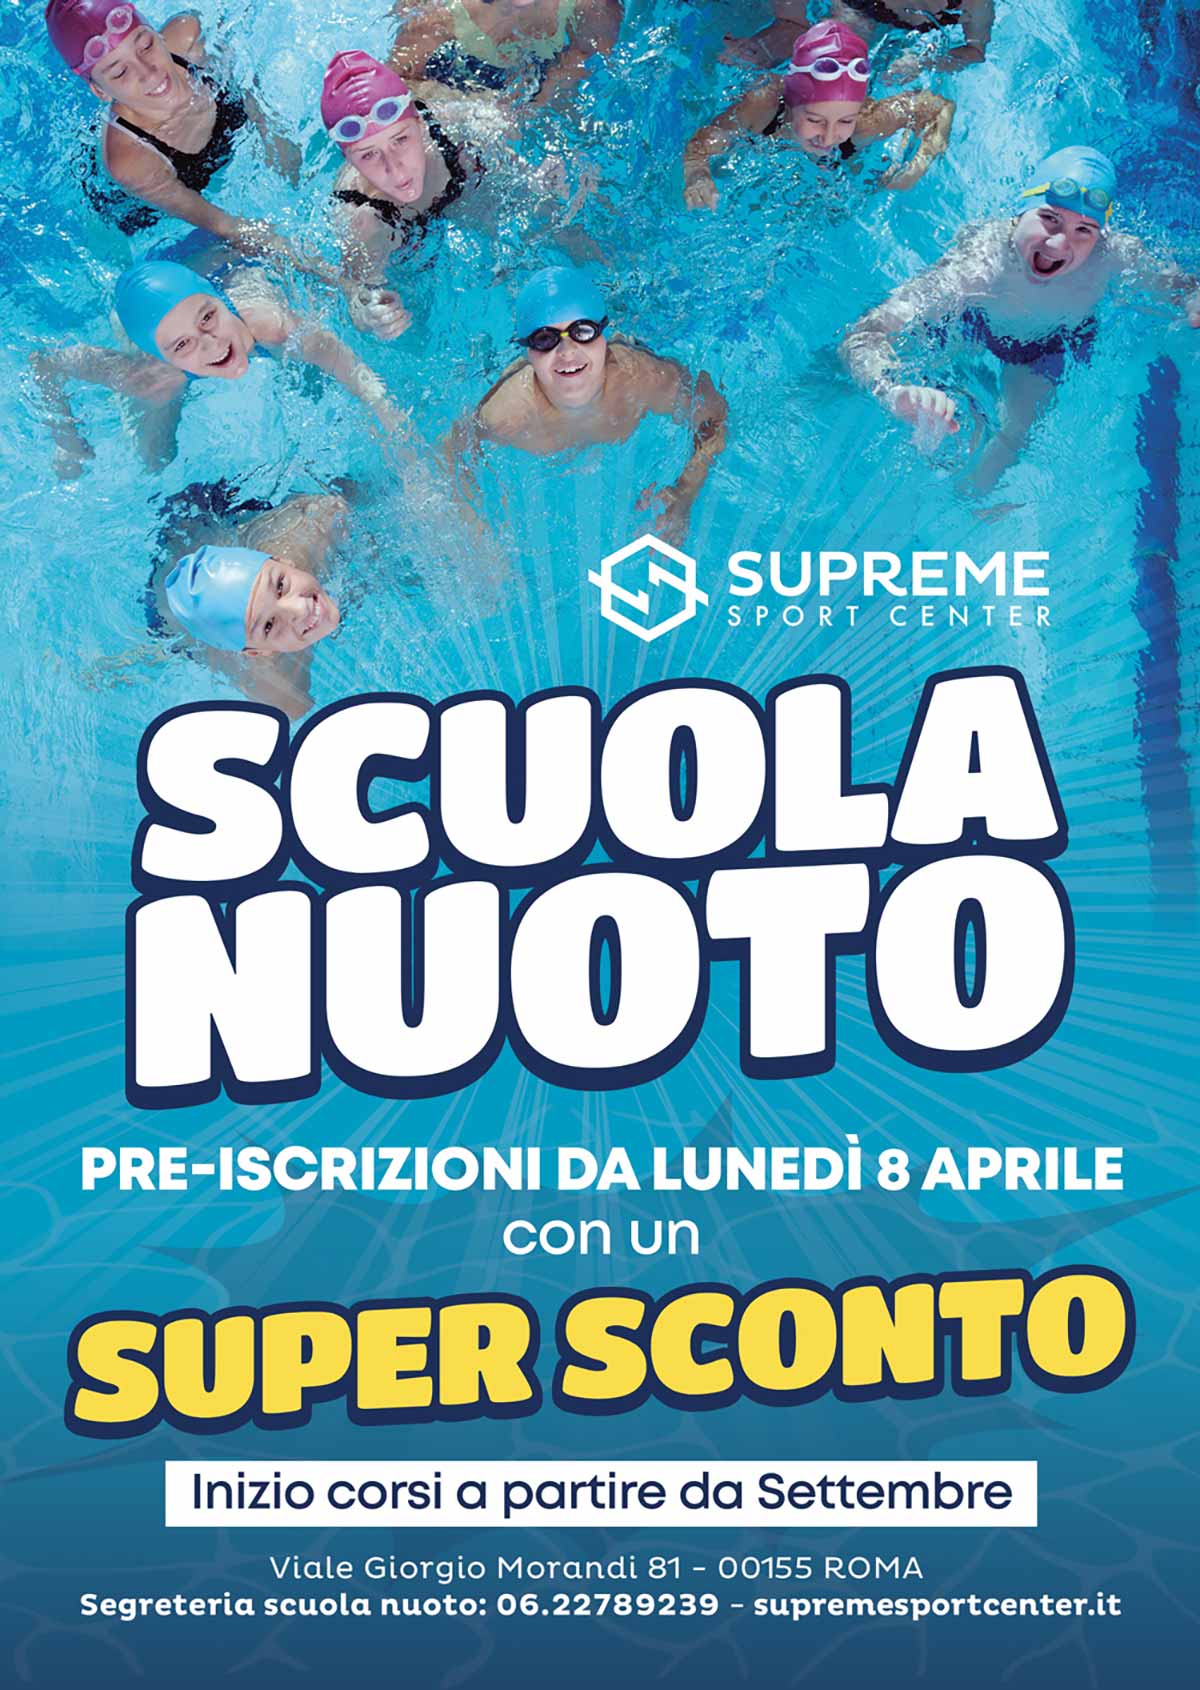 Scuola Nuoto: Pre-iscrizioni aperte da Lunedì 08 Aprile in Super Sconto